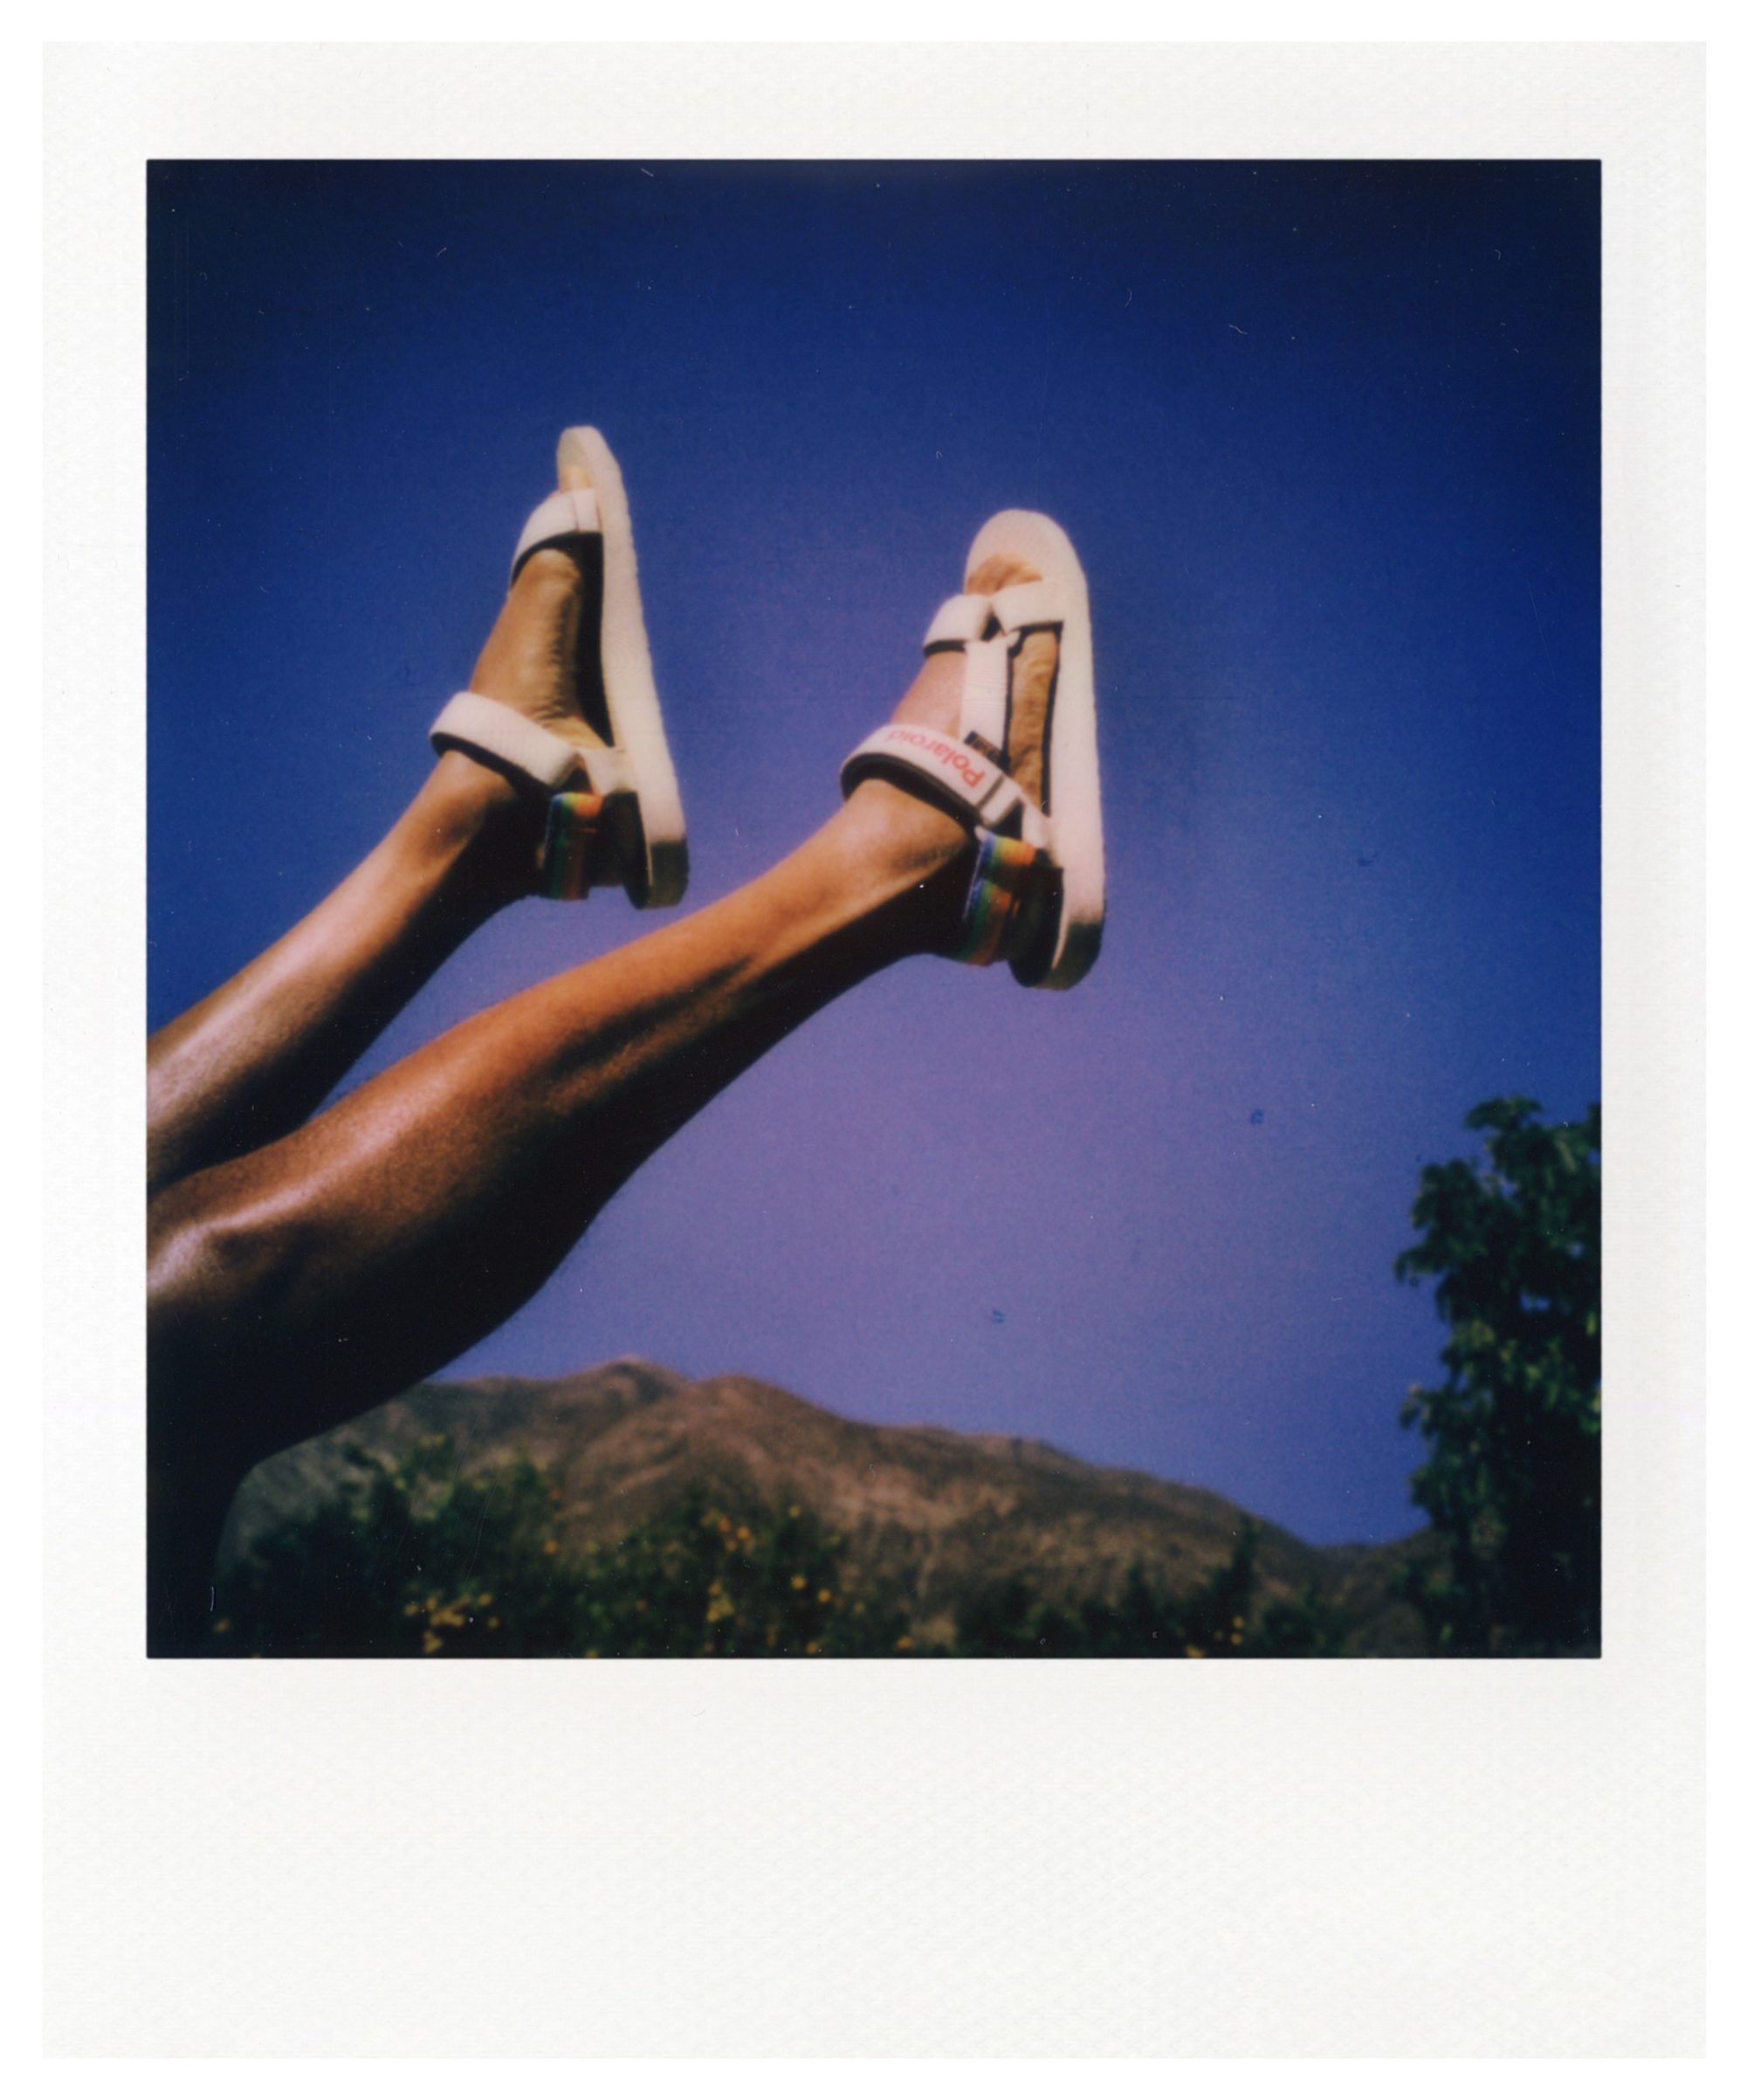 帶上涼鞋與拍立得 就是夏日出遊的完美組合 Teva X Polaroid 聯名系列 The Femin